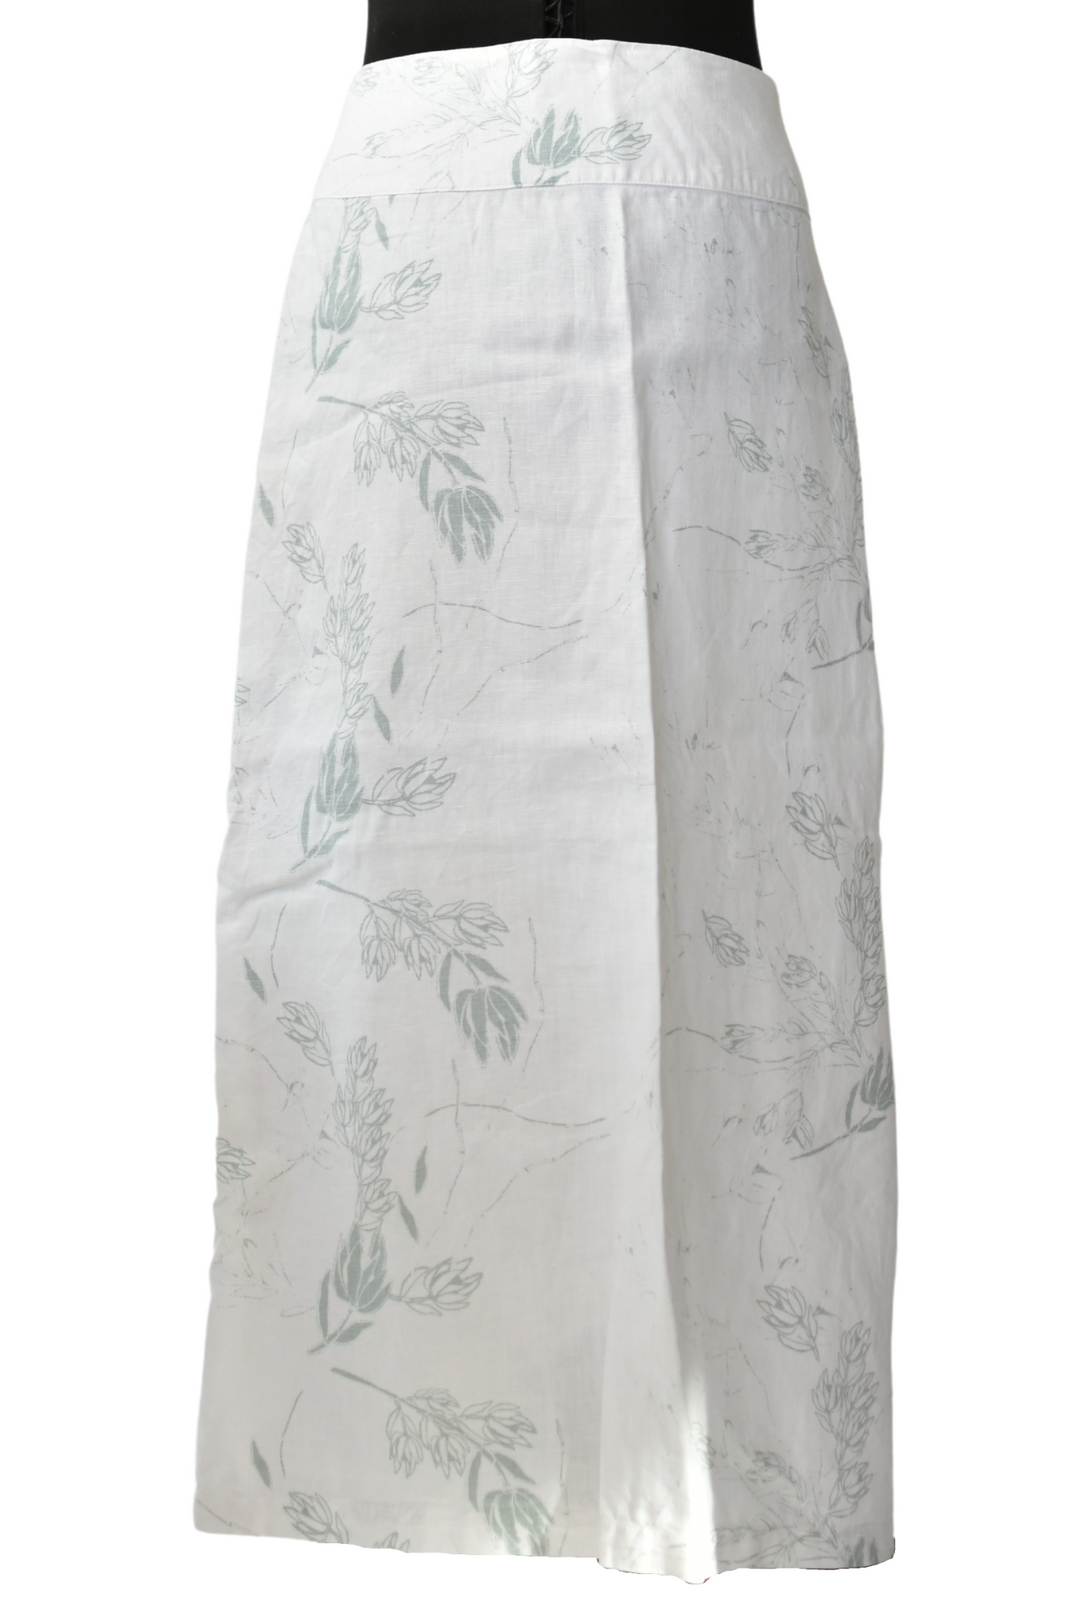 White Linen Detailed Skirt